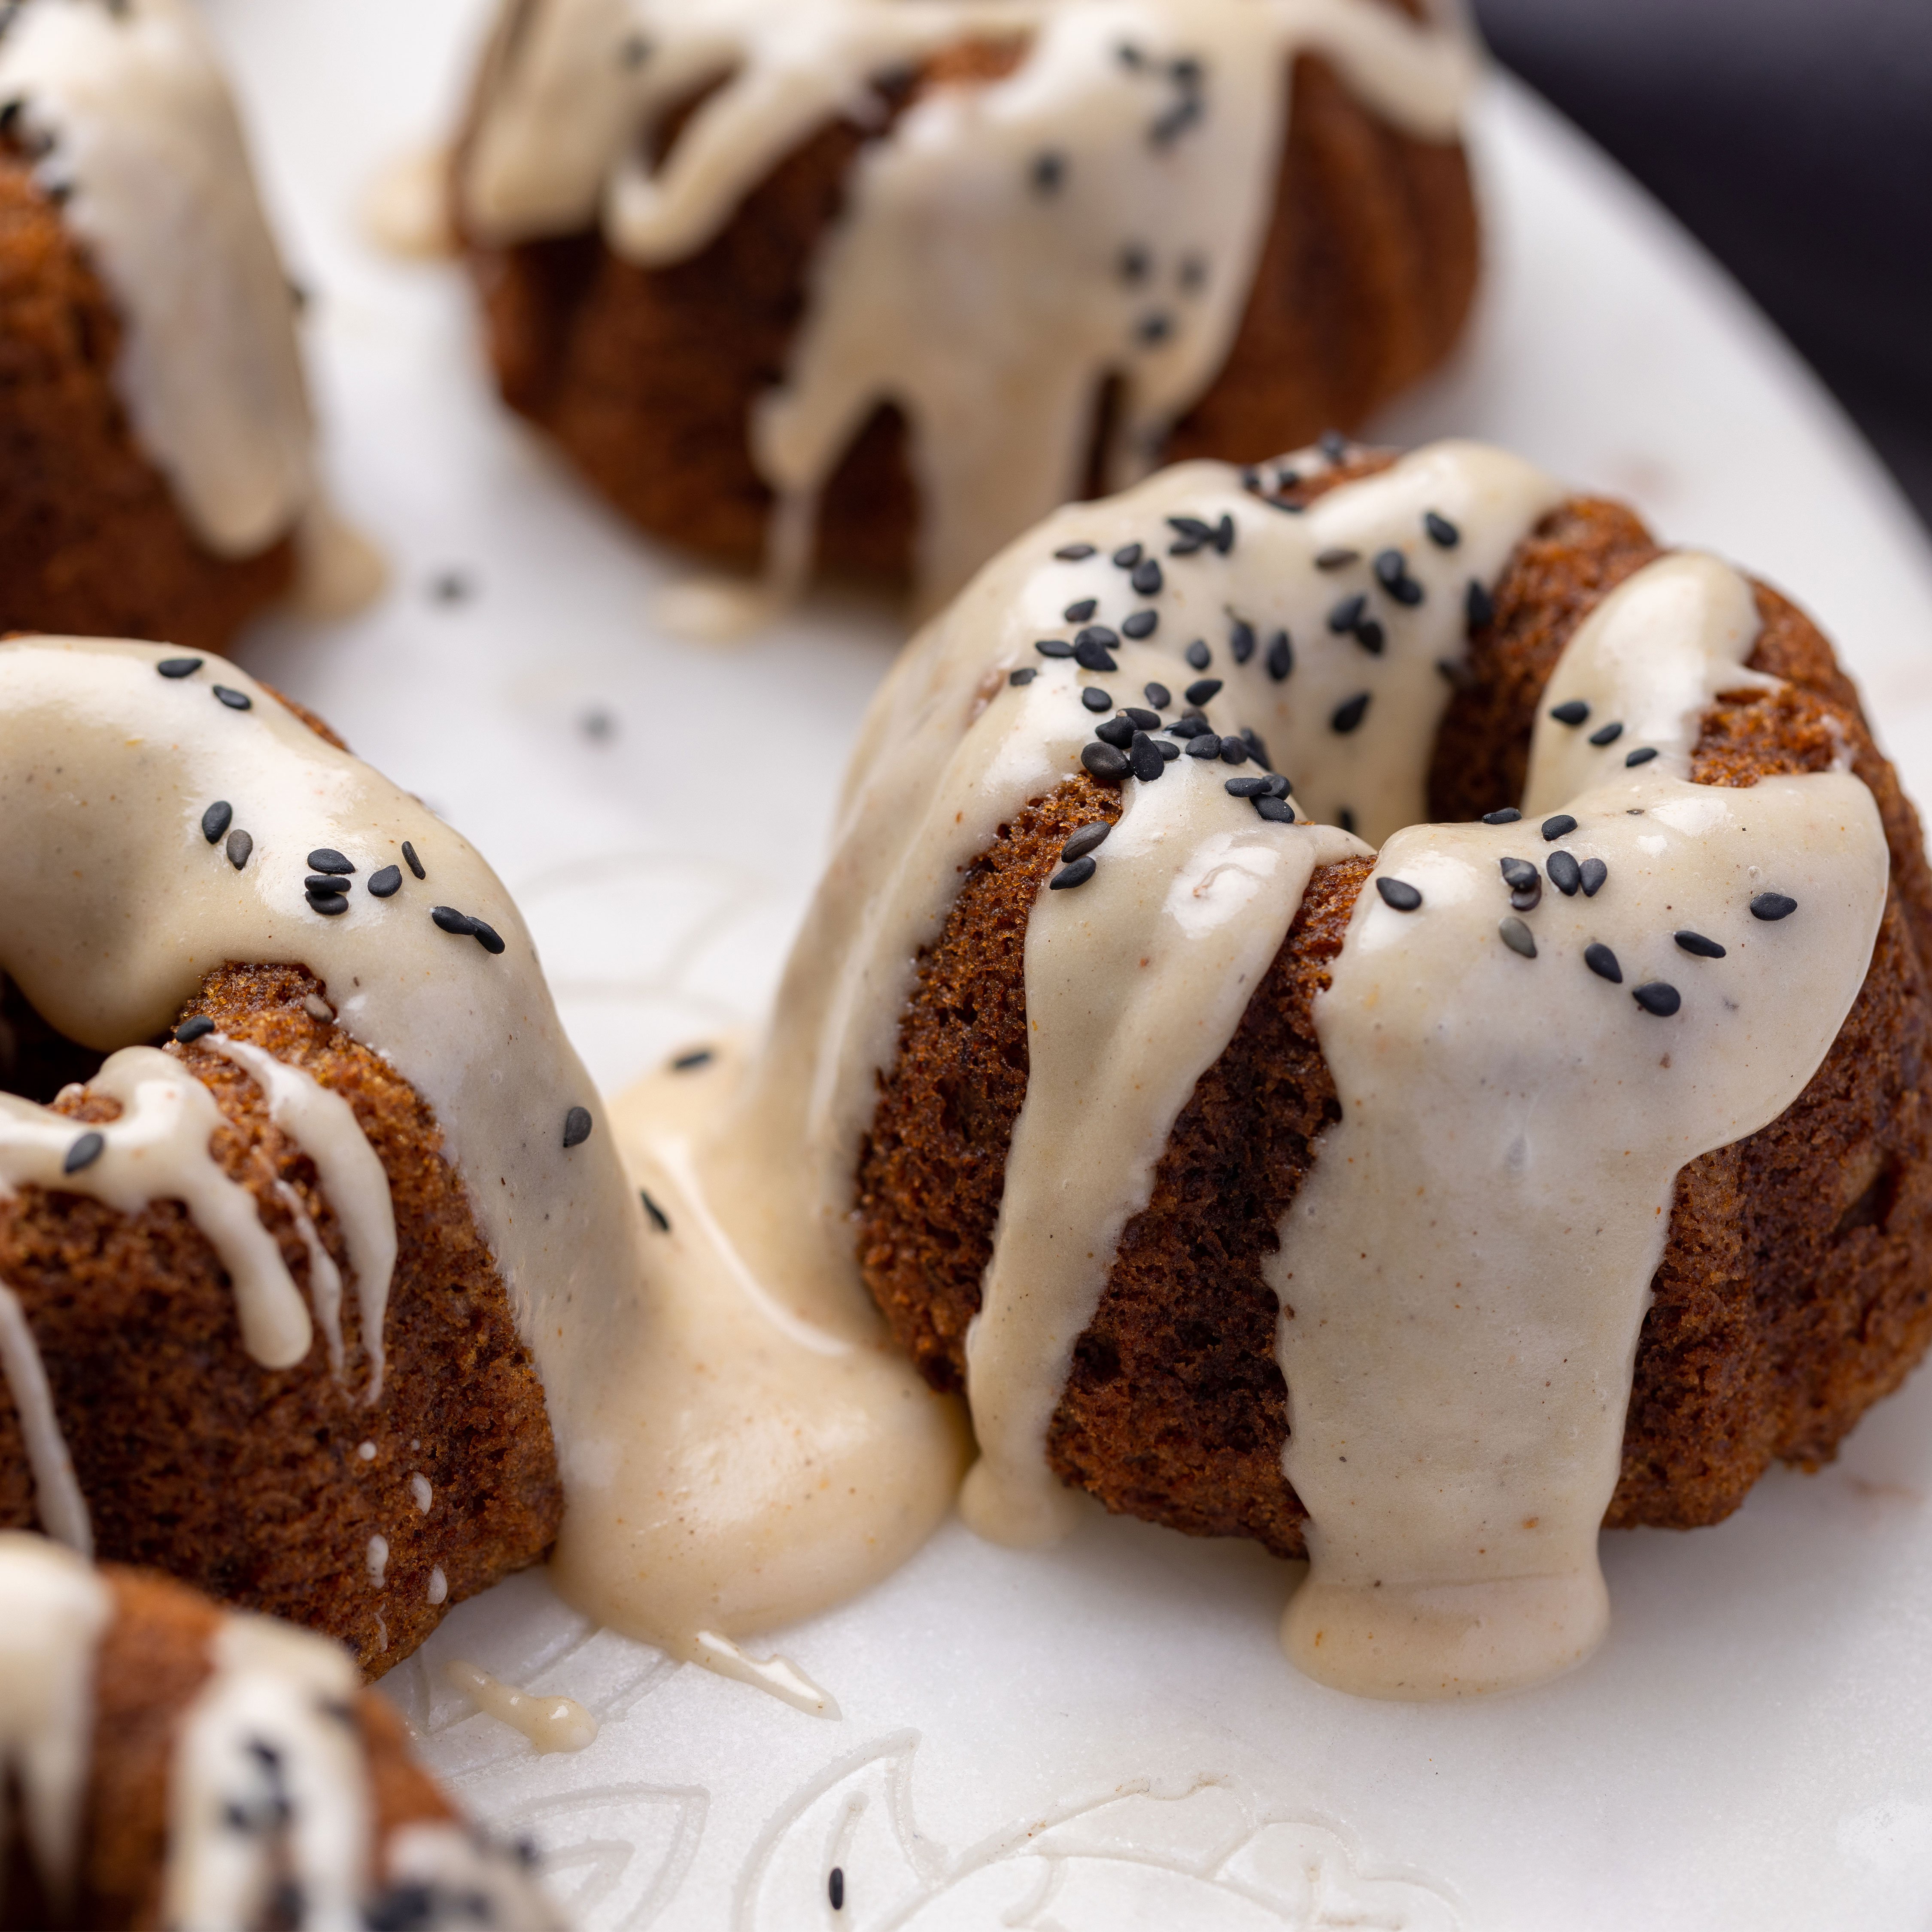 Dalia Dogmoch's mini sticky date Bundt cakes with a vanilla & tahini drizzle